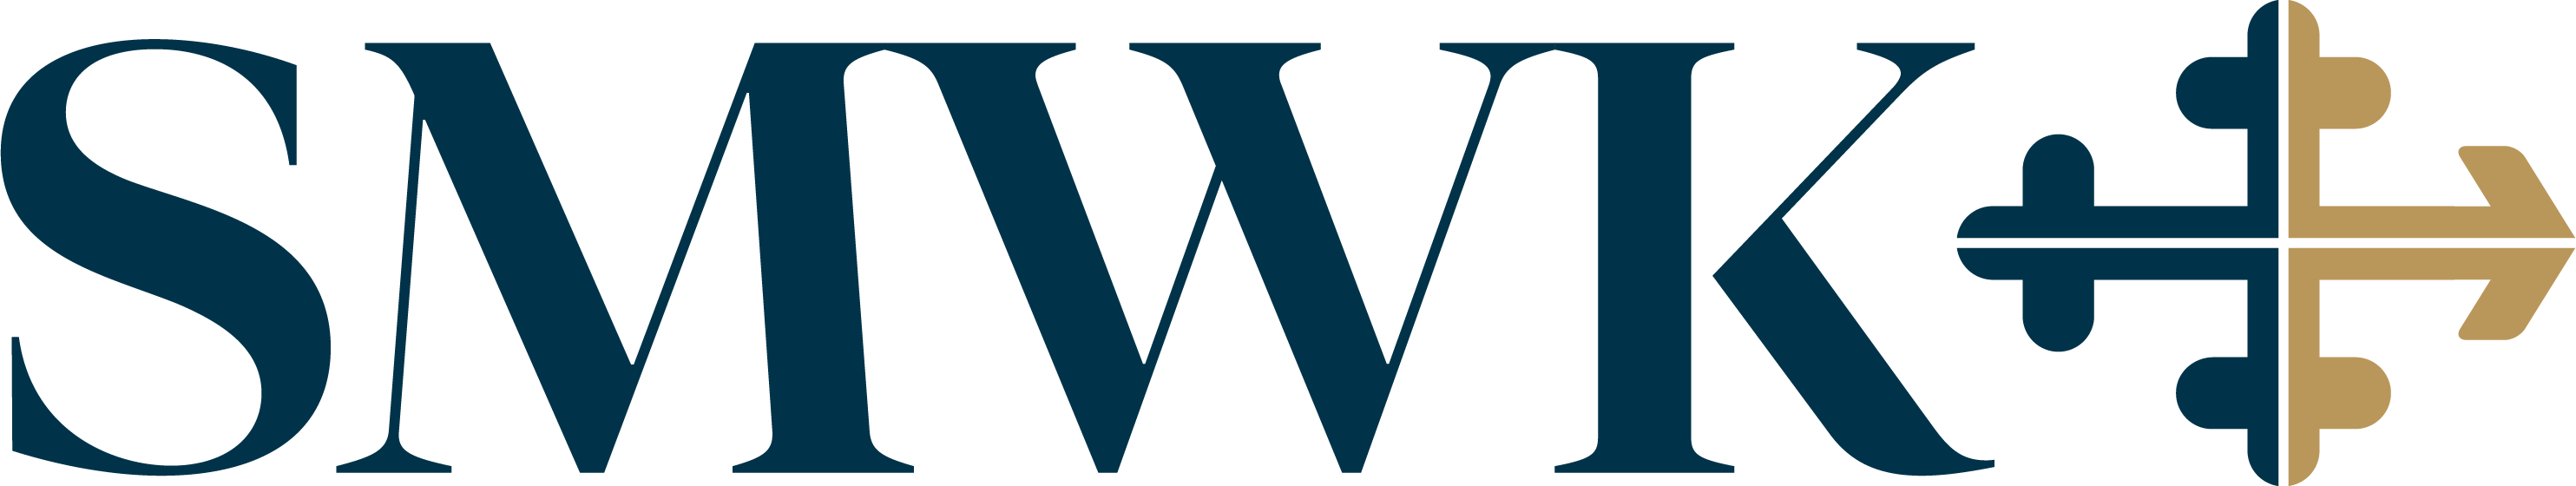 SCHWARTZ, METZ & WISE, P.A. Logo